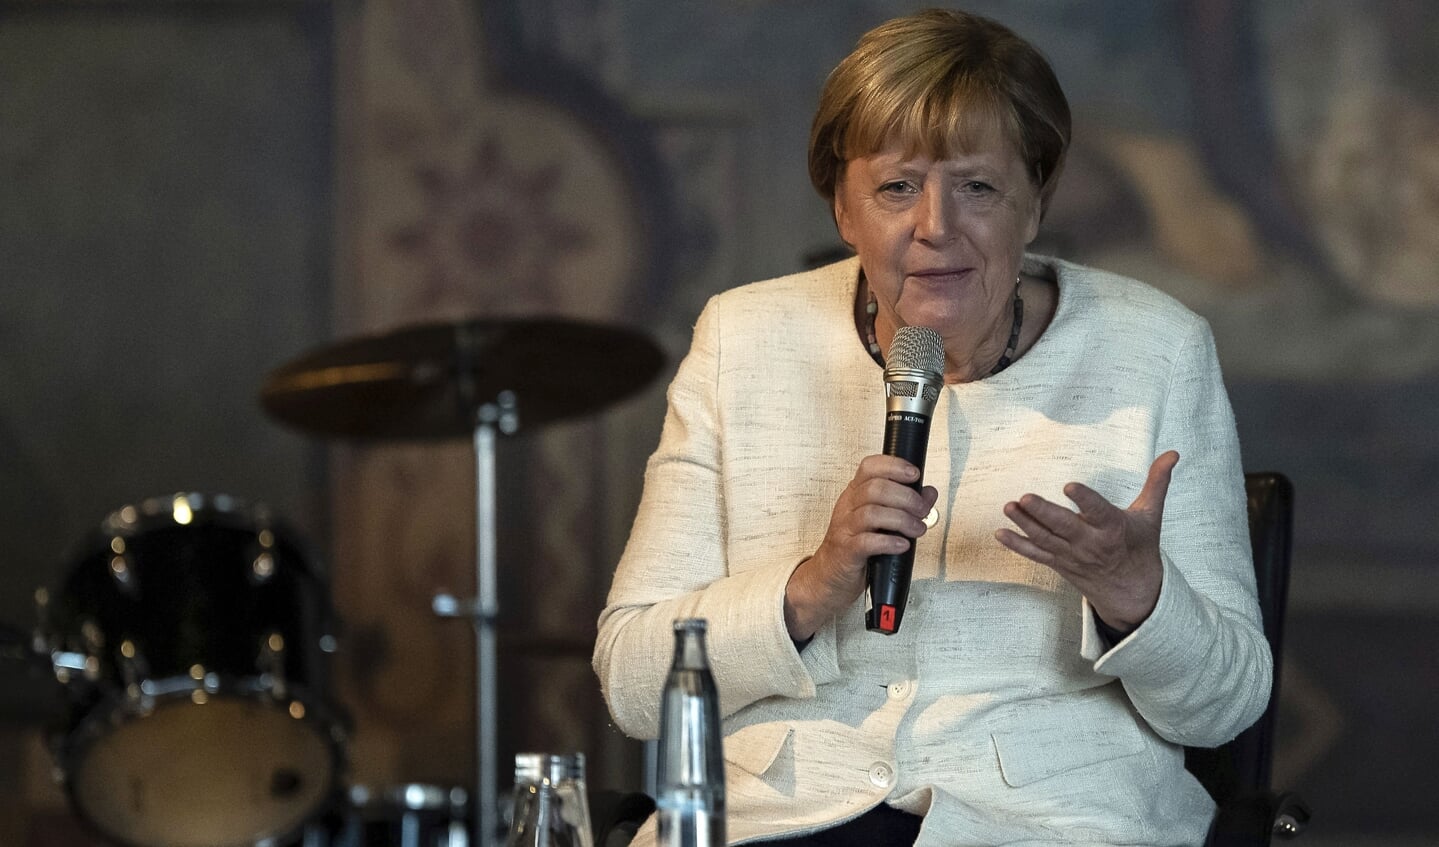 - Ved at hjælpe mere end en million flygtninge til at overleve og genopbygge deres liv, viste tidligere forbundskansler Angela Merkel stort moralsk og politisk mod, siger FNs højkommissær for flygtninge, Filippo Grandi.